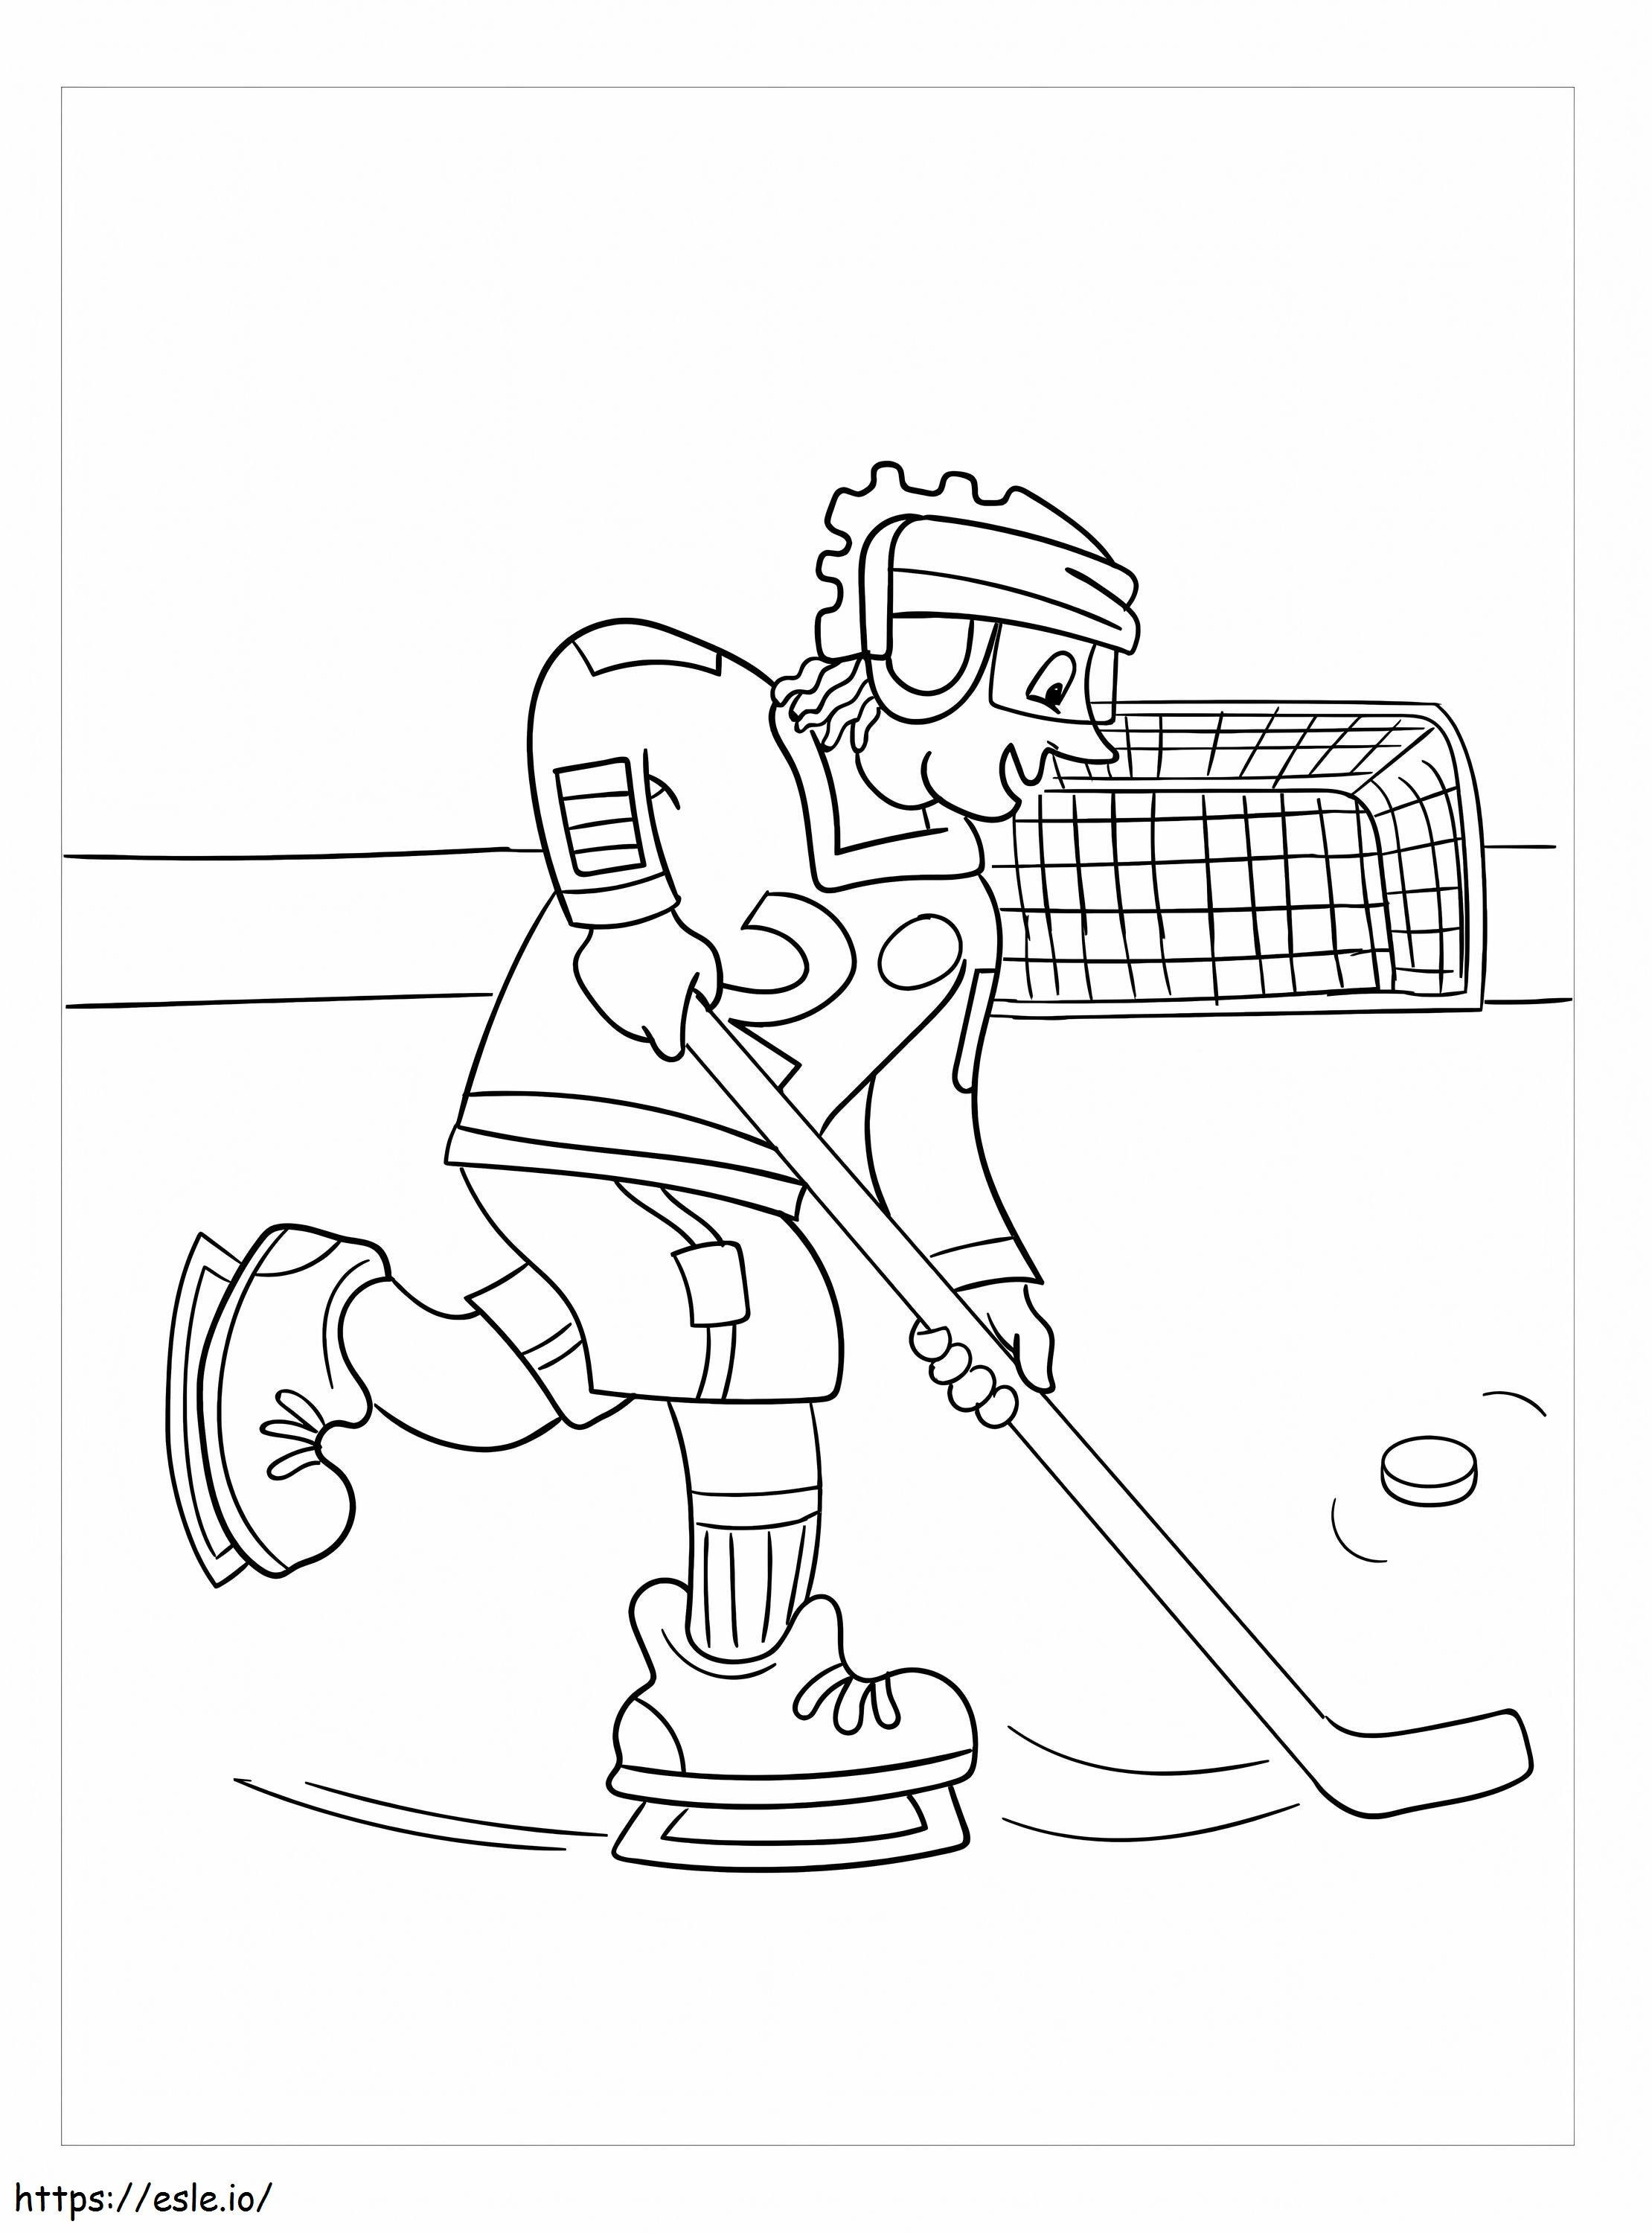 Nette Hockeyspieler ausmalbilder